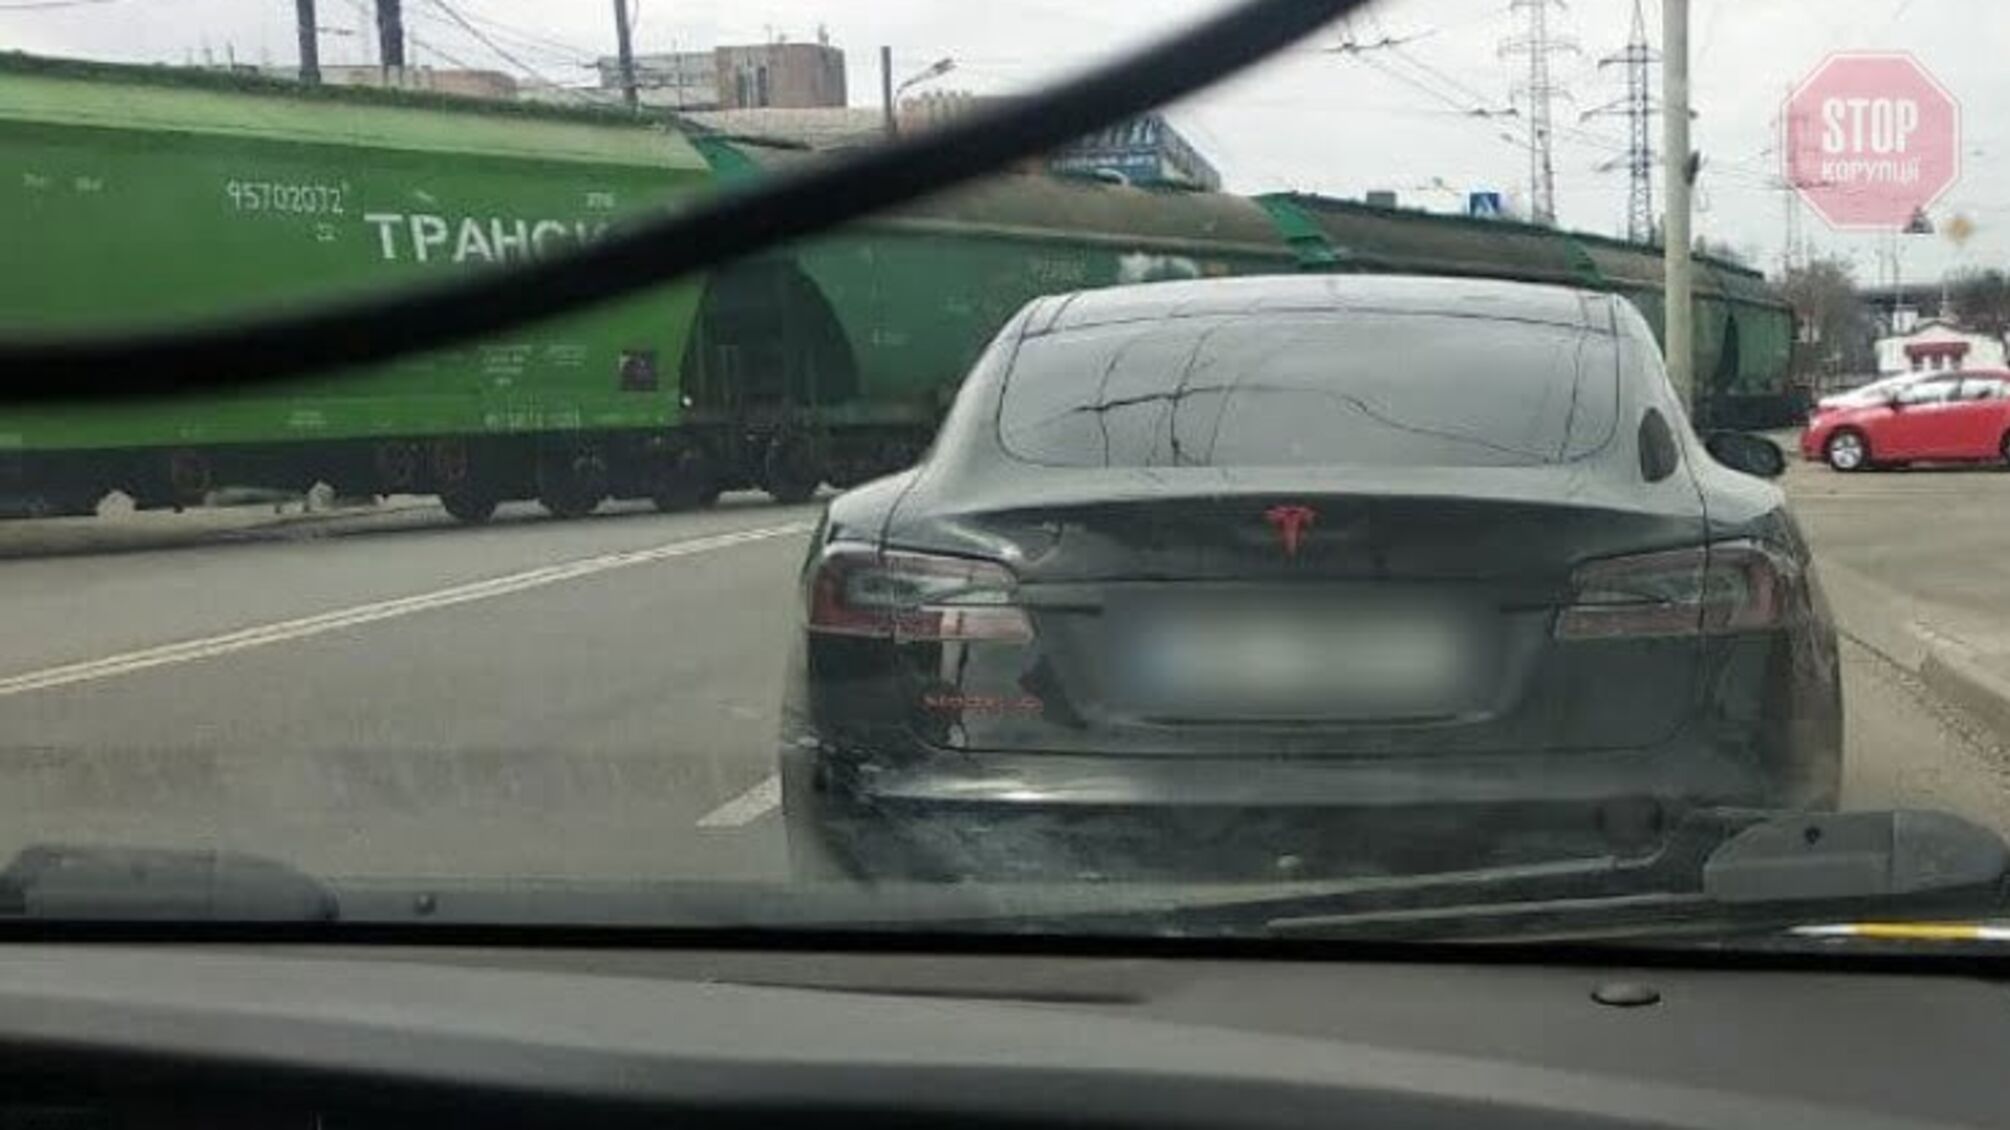 Новини Дніпра: поліція знайшла розшукуваний Інтерполом автомобіль Tesla